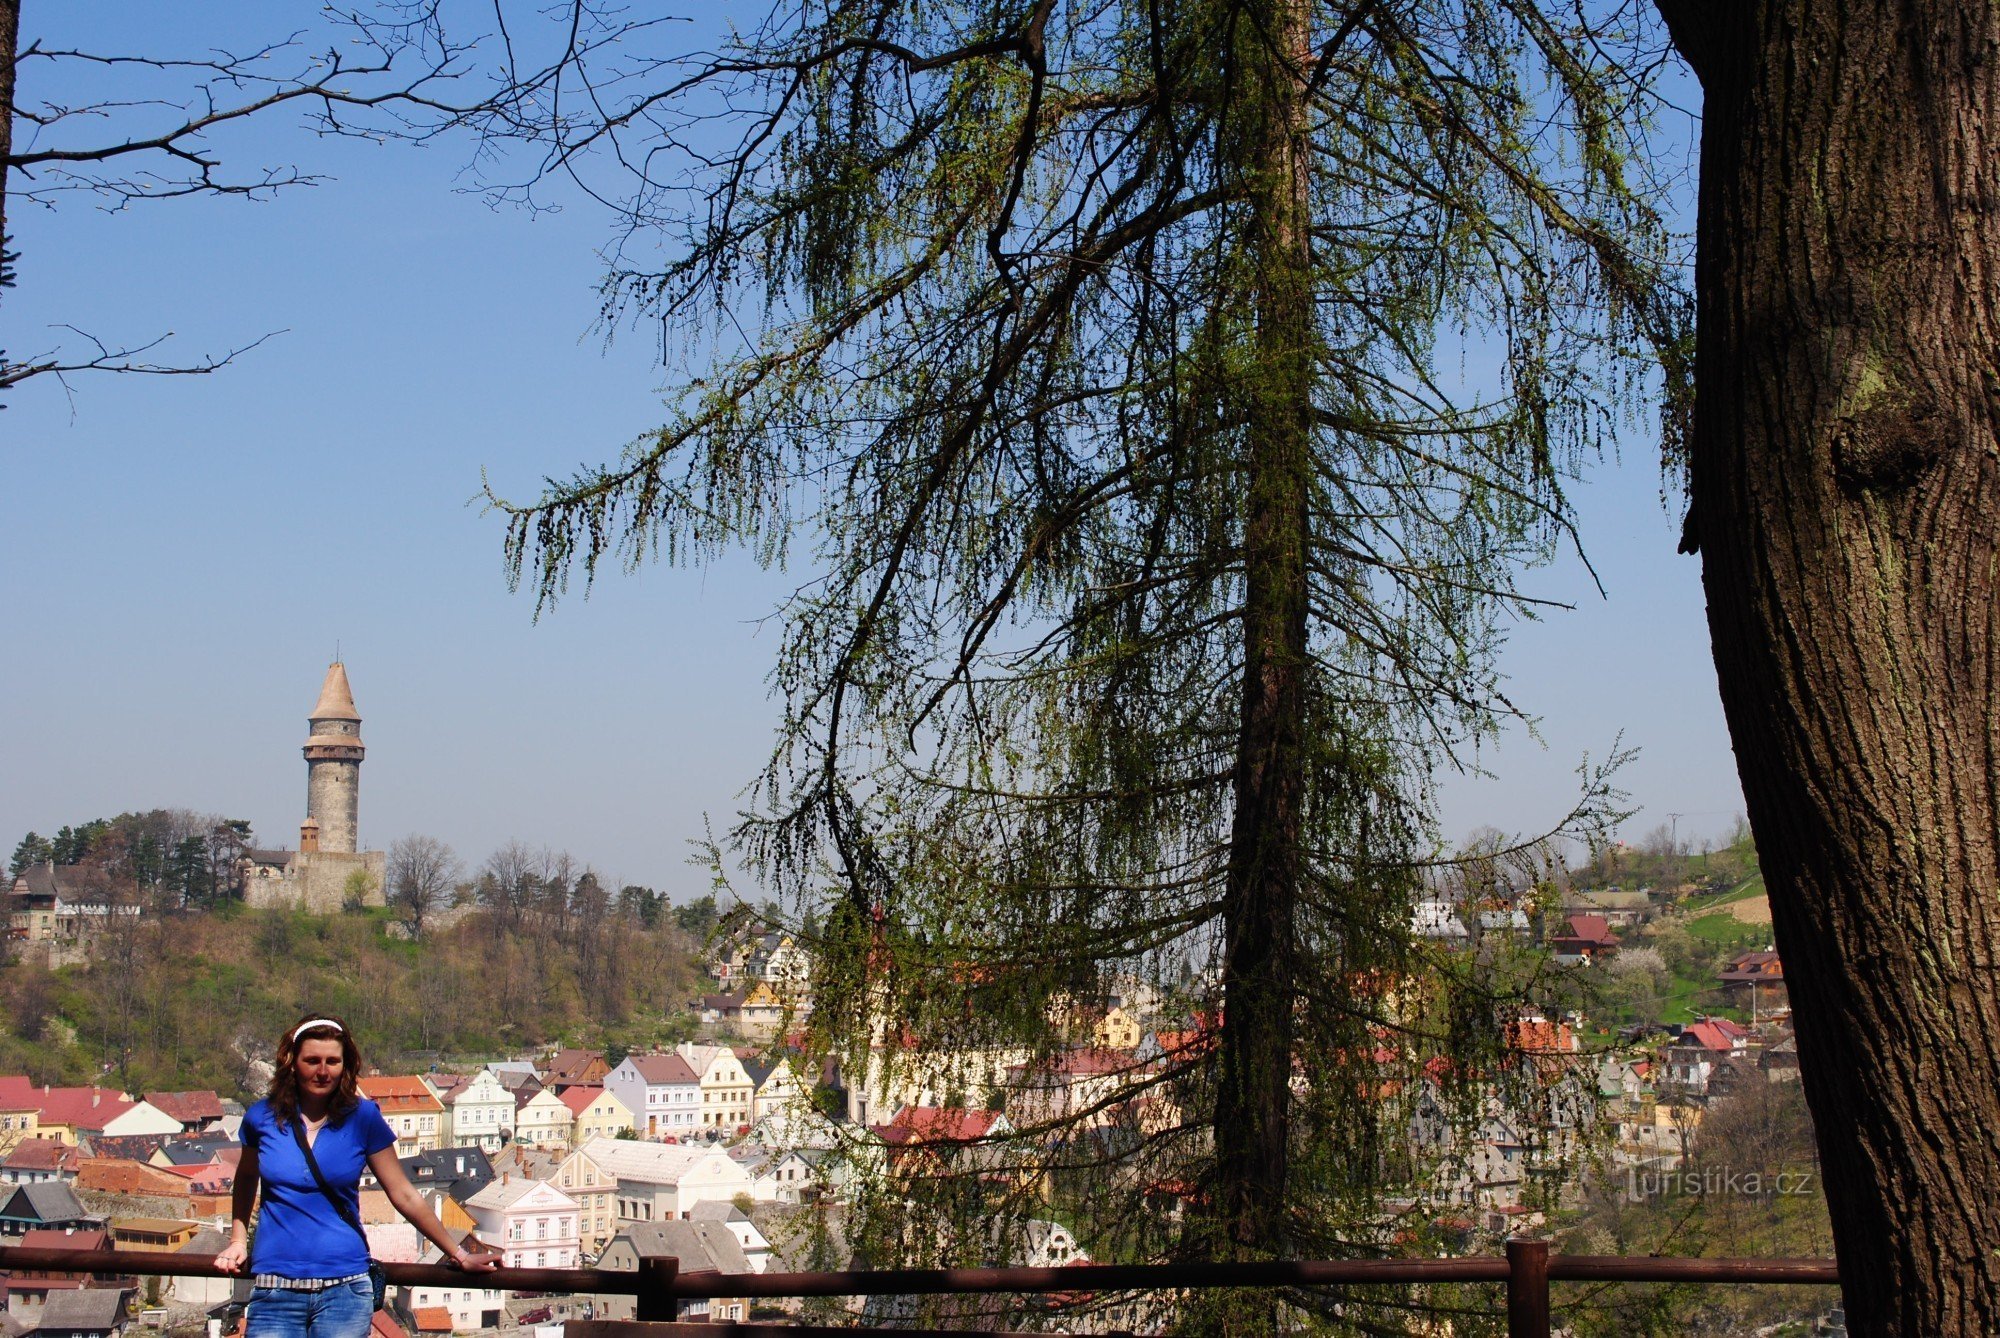 nhìn từ hang Šípka trên khu vực lịch sử của thành phố với tháp hình trụ Trúba